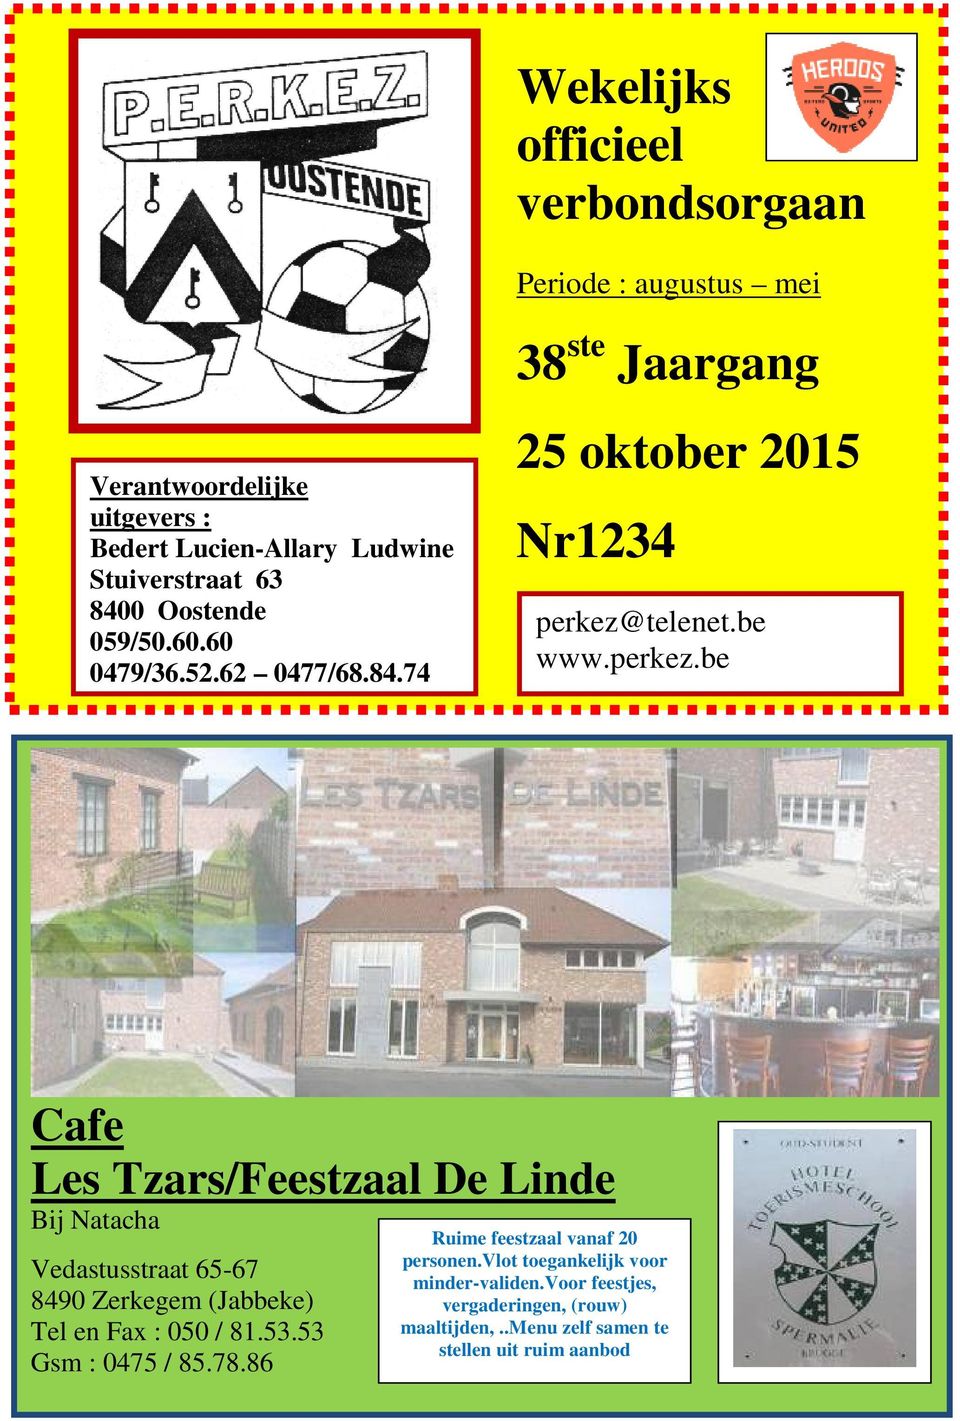 telenet.be www.perkez.be Cafe Les Tzars/Feestzaal De Linde Bij Natacha Vedastusstraat 65-67 8490 Zerkegem (Jabbeke) Tel en Fax : 050 / 81.53.